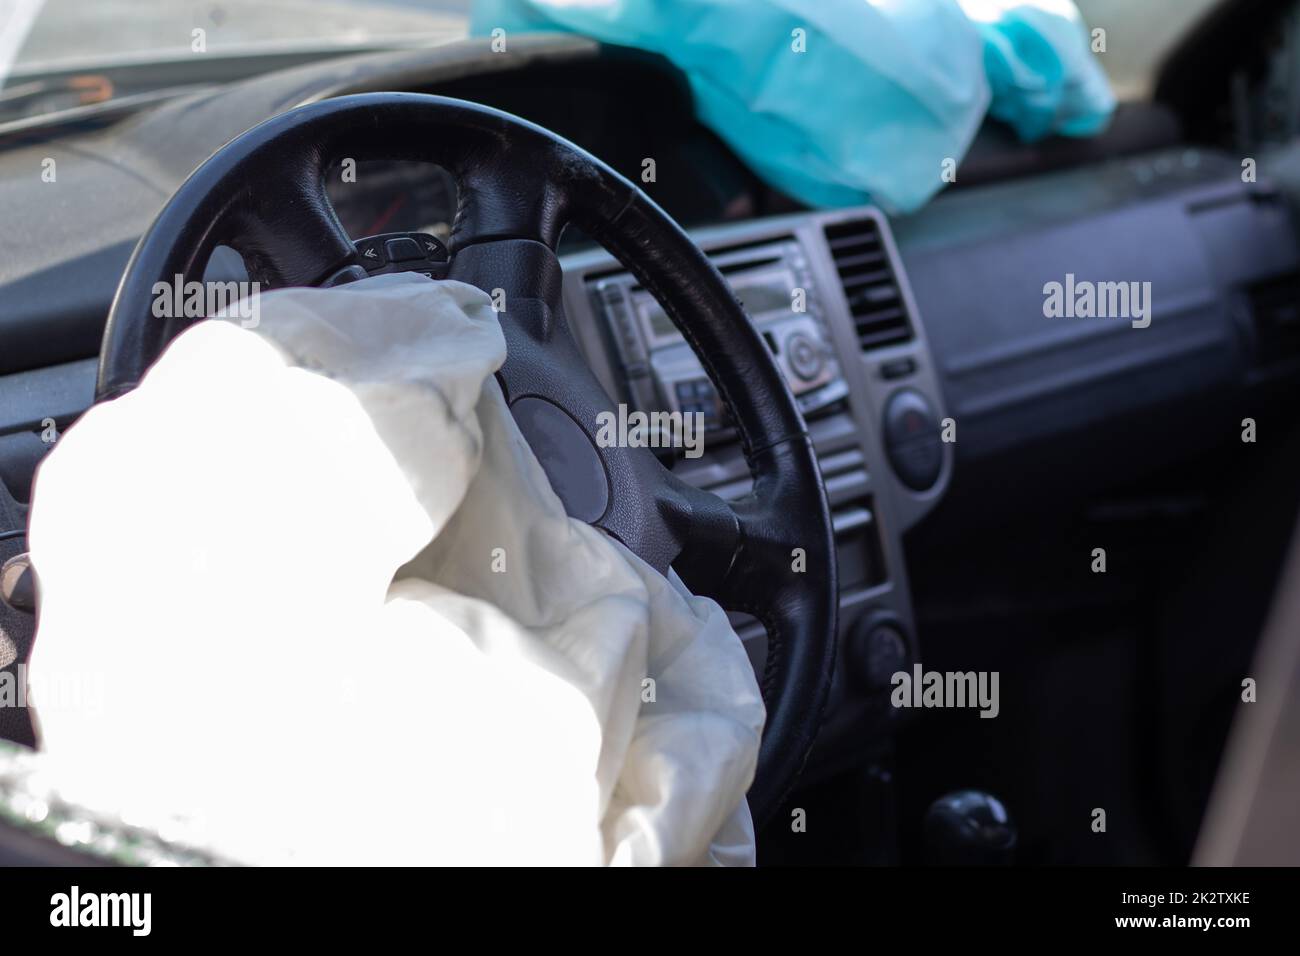 Der Fahrerairbag wurde nach der Kollision auf dem Lenkrad des Fahrzeugs ausgelöst. Airbags entlusten sich nach einer entfalteten Airbagauslösung. Der Airbag wurde ausgelöst. Auto nach Unfall. Sicherheitsvorrichtung im Auto. Stockfoto